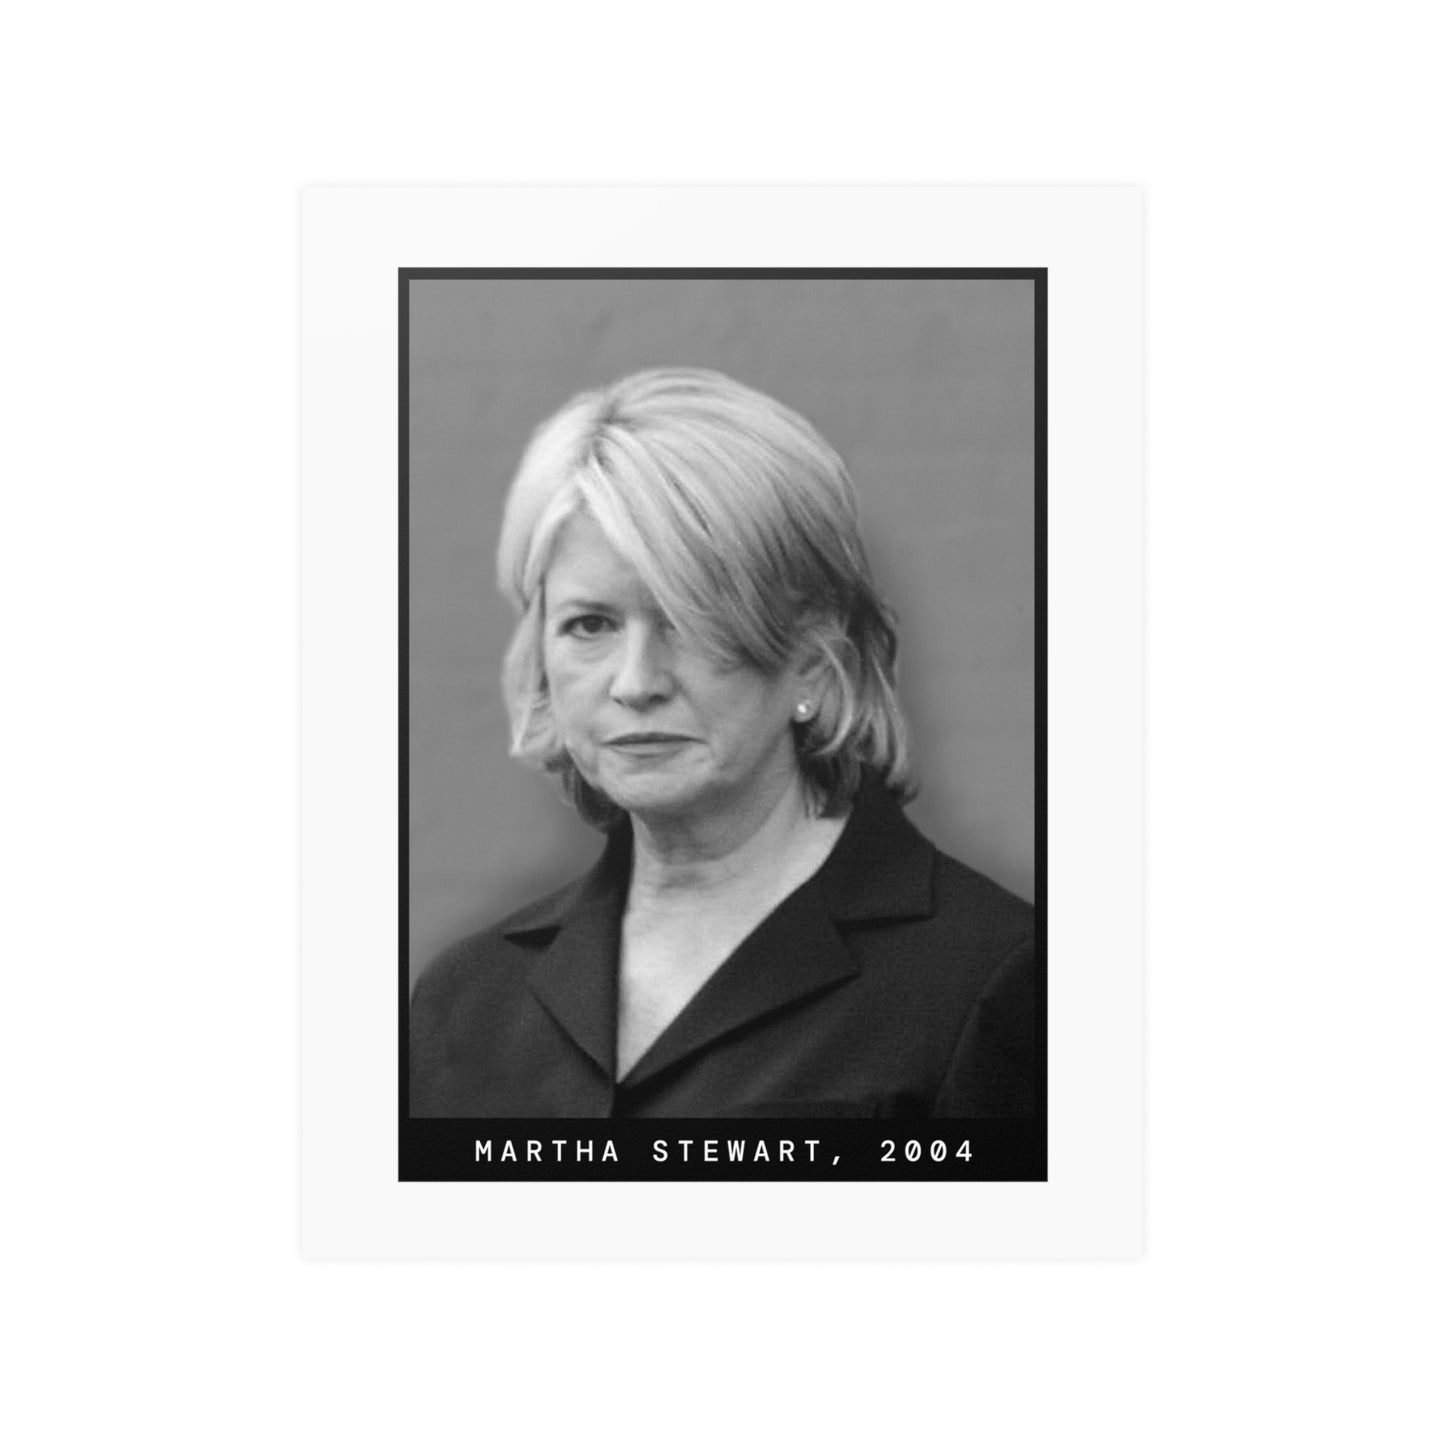 Martha Stewart, 2004 Celebrity Mugshot Poster